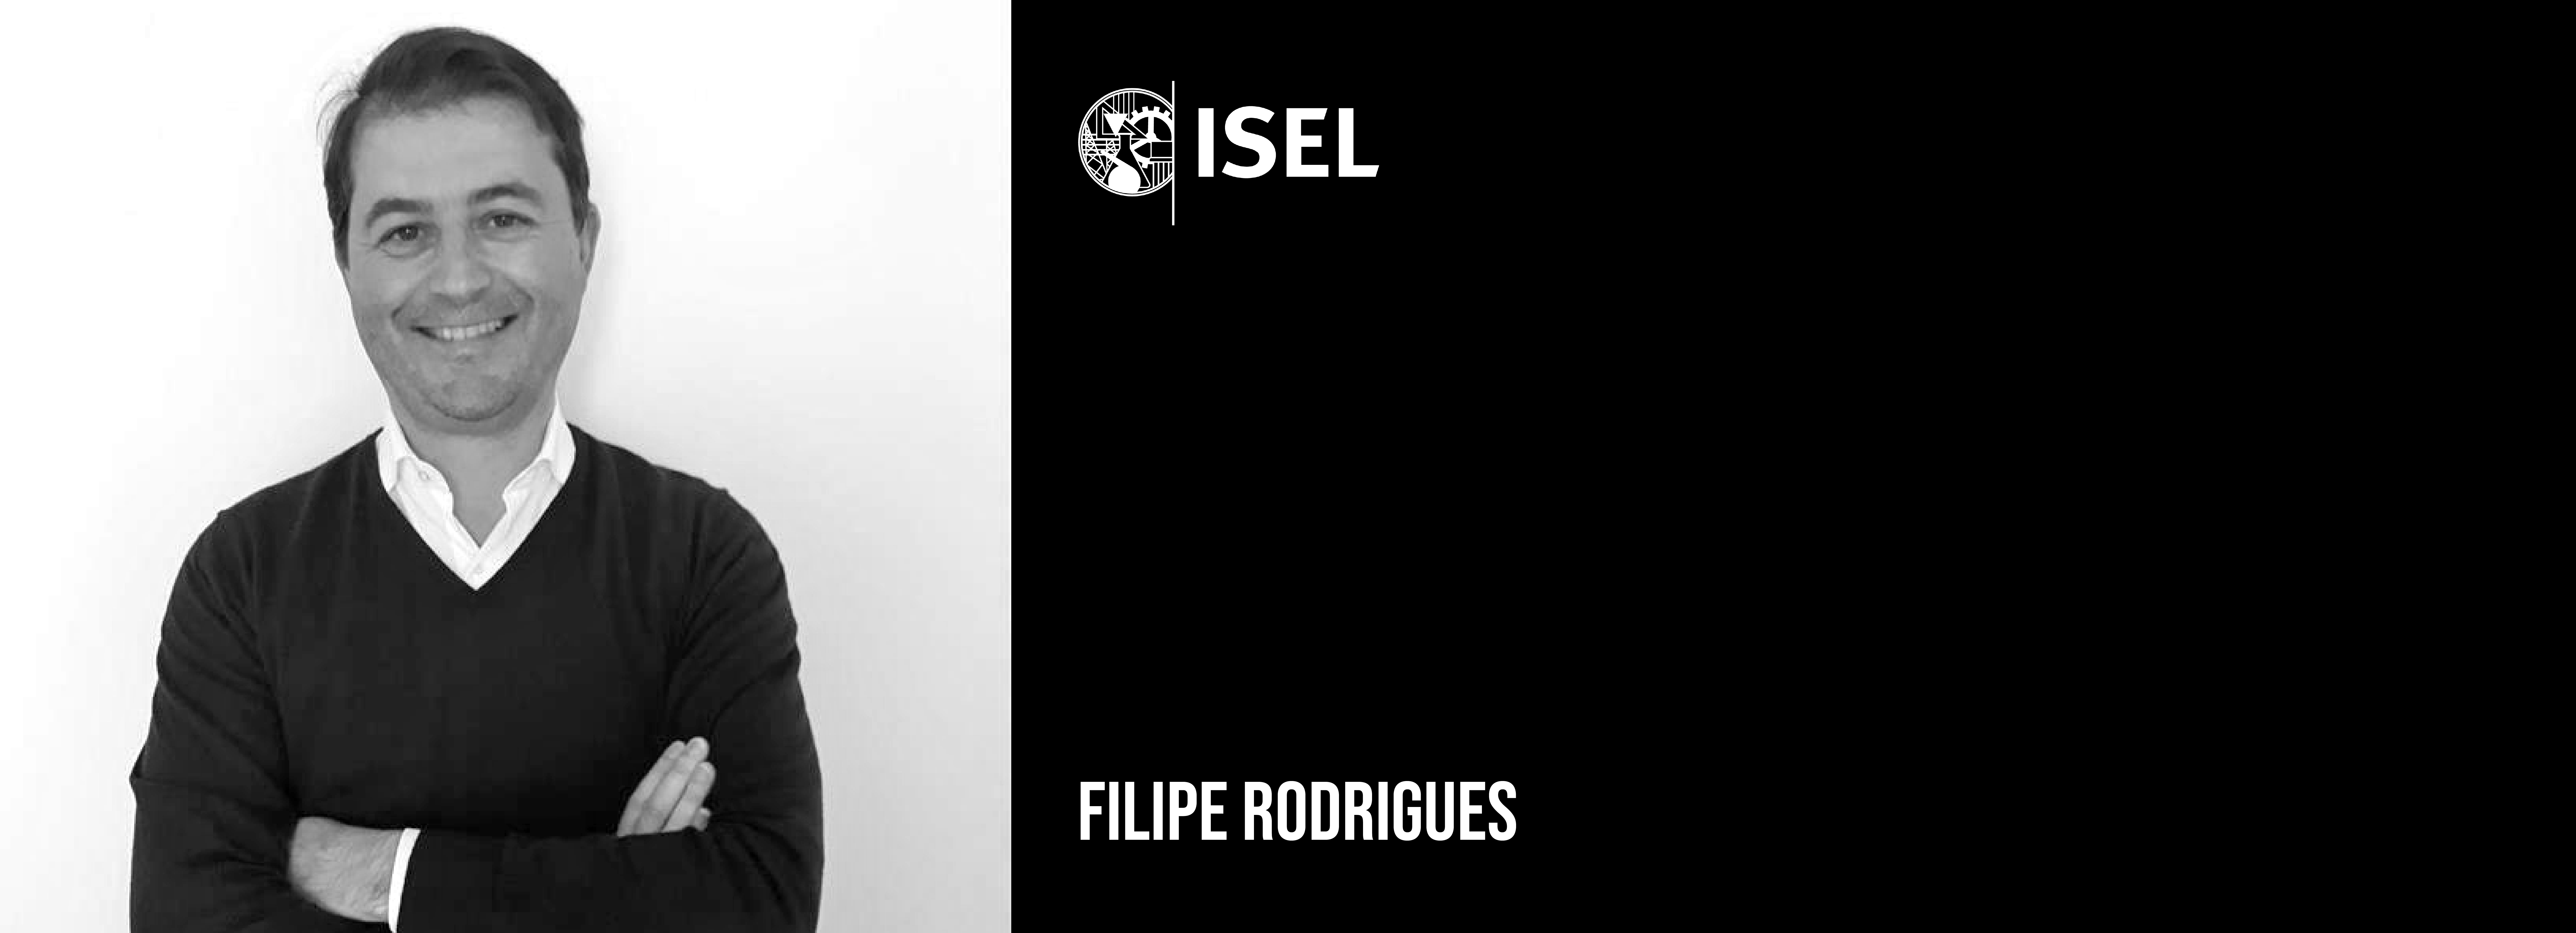 Falecimento do professor Filipe Rodrigues Departamento de Engenharia Mecânica do ISEL